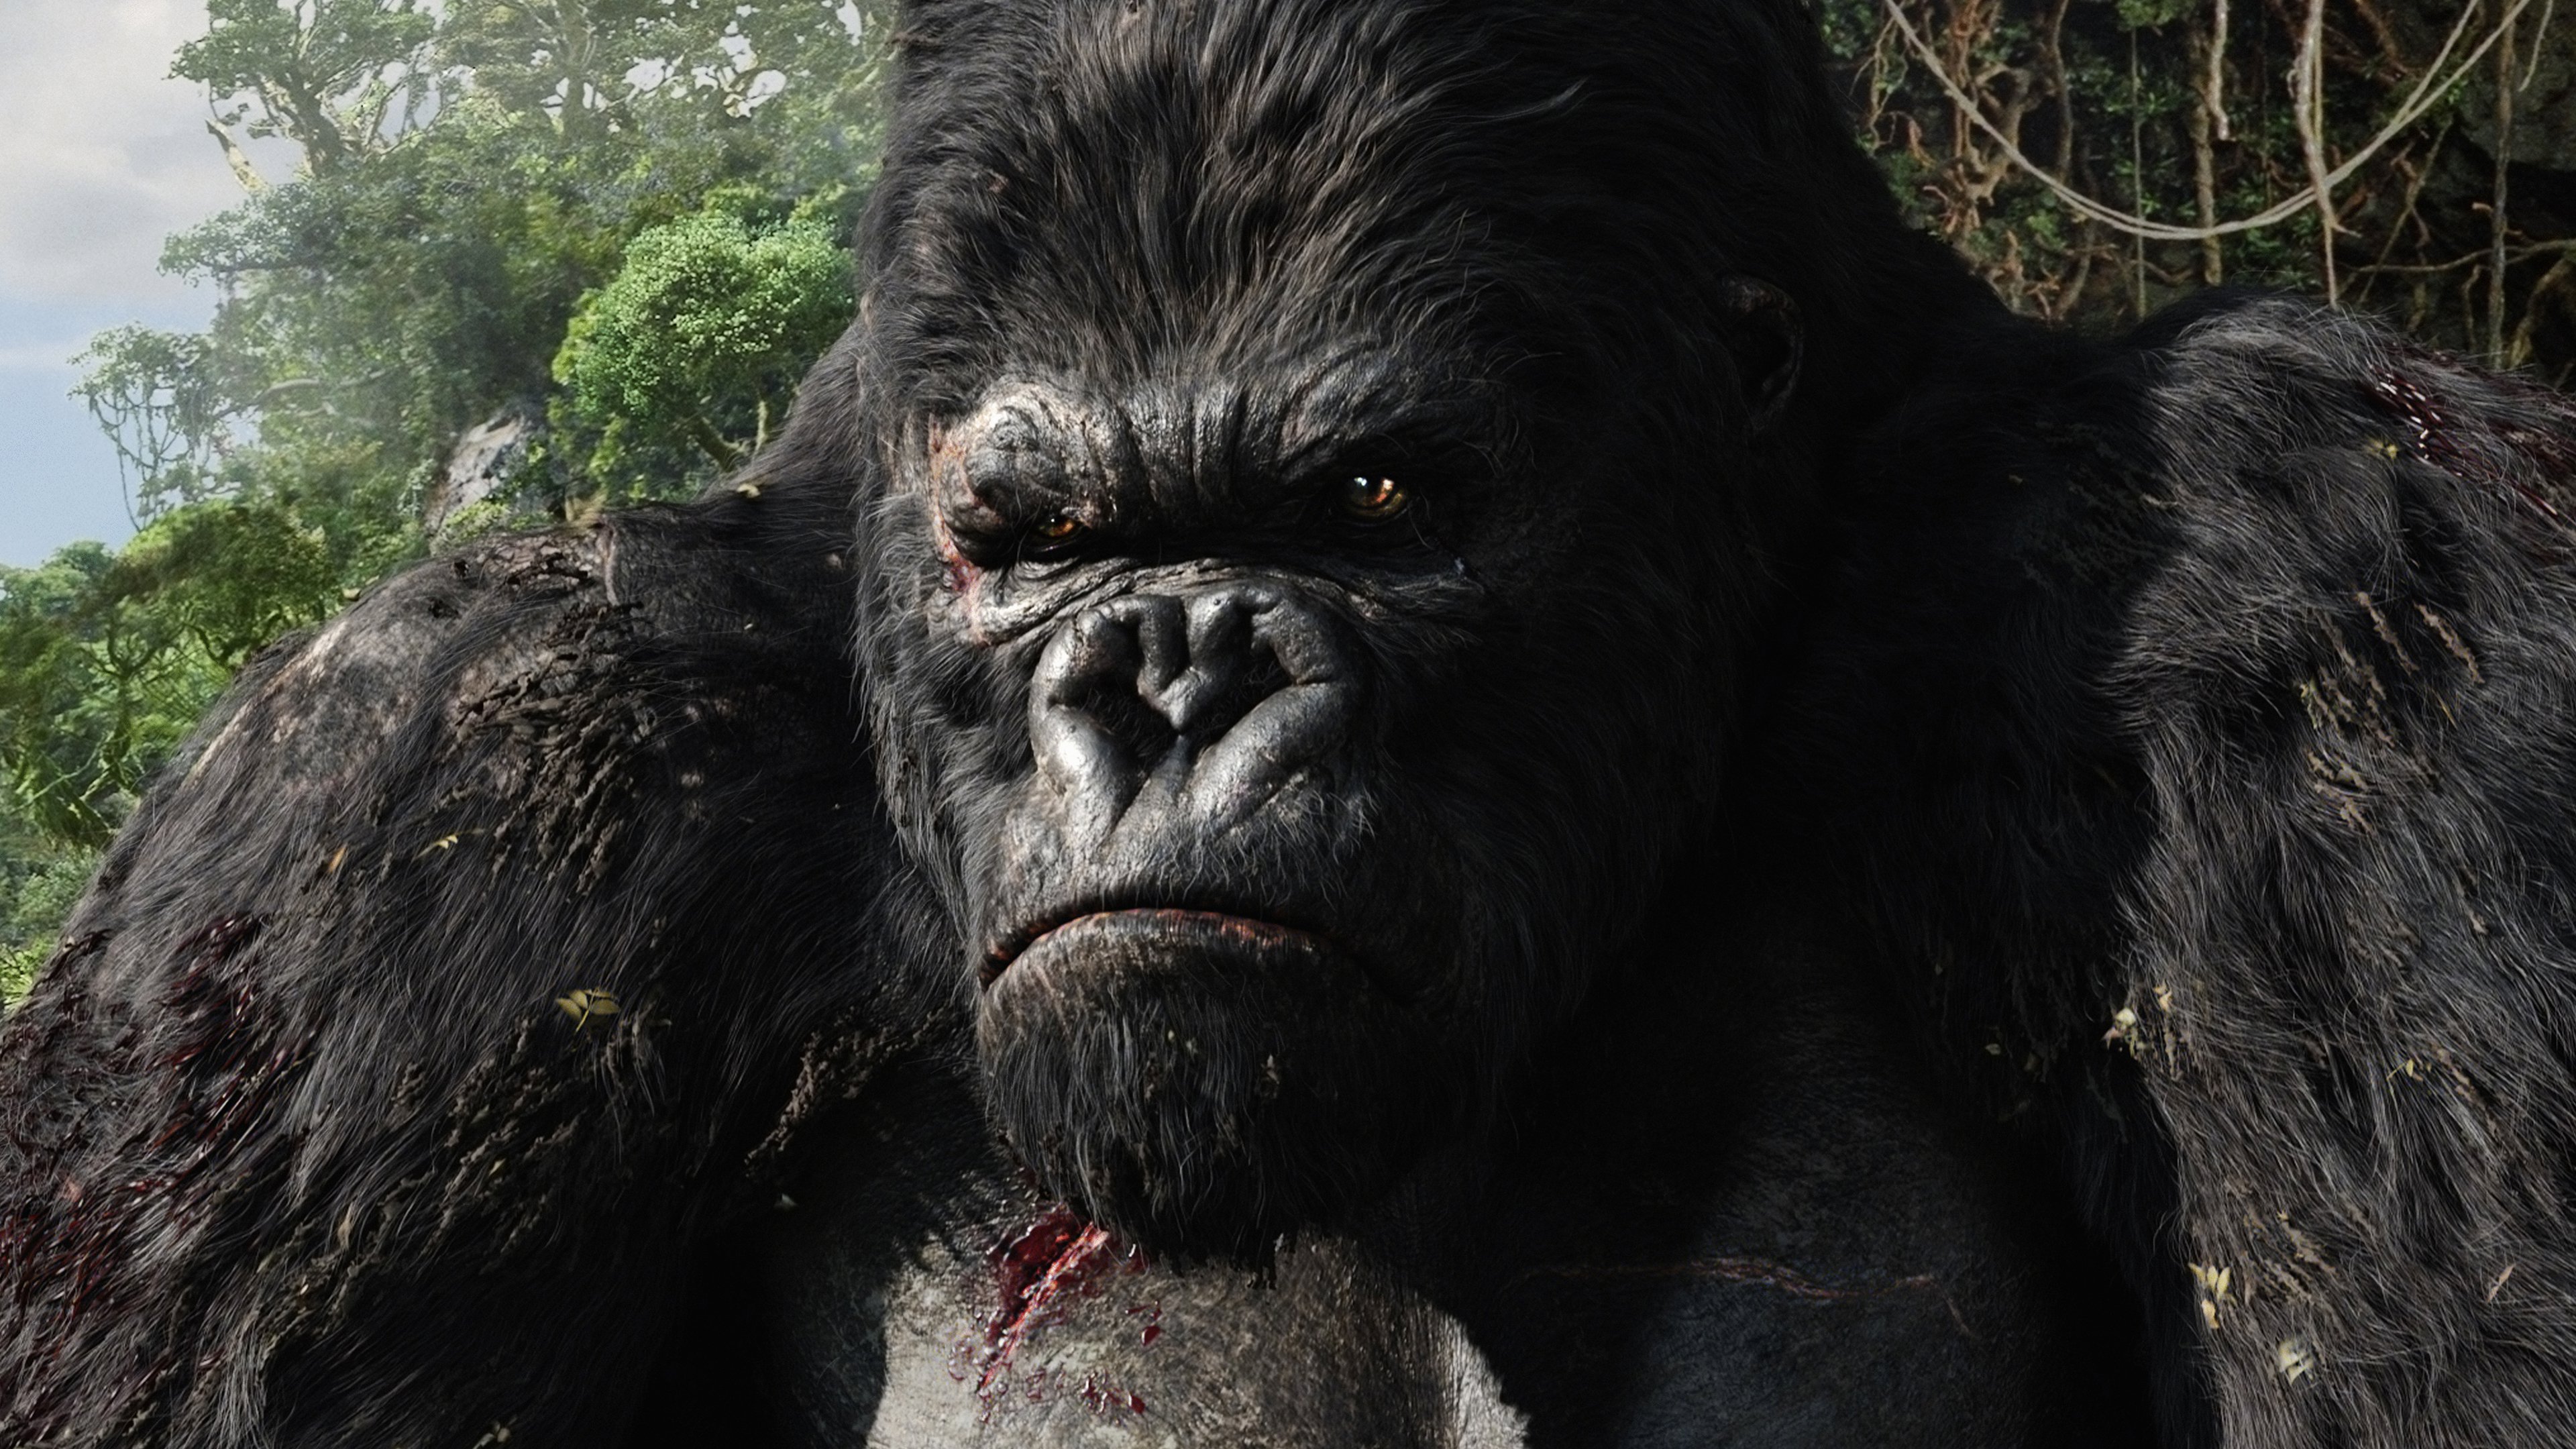 King Kong sur Amazon Prime Video qui incarnait le gorille géant dans